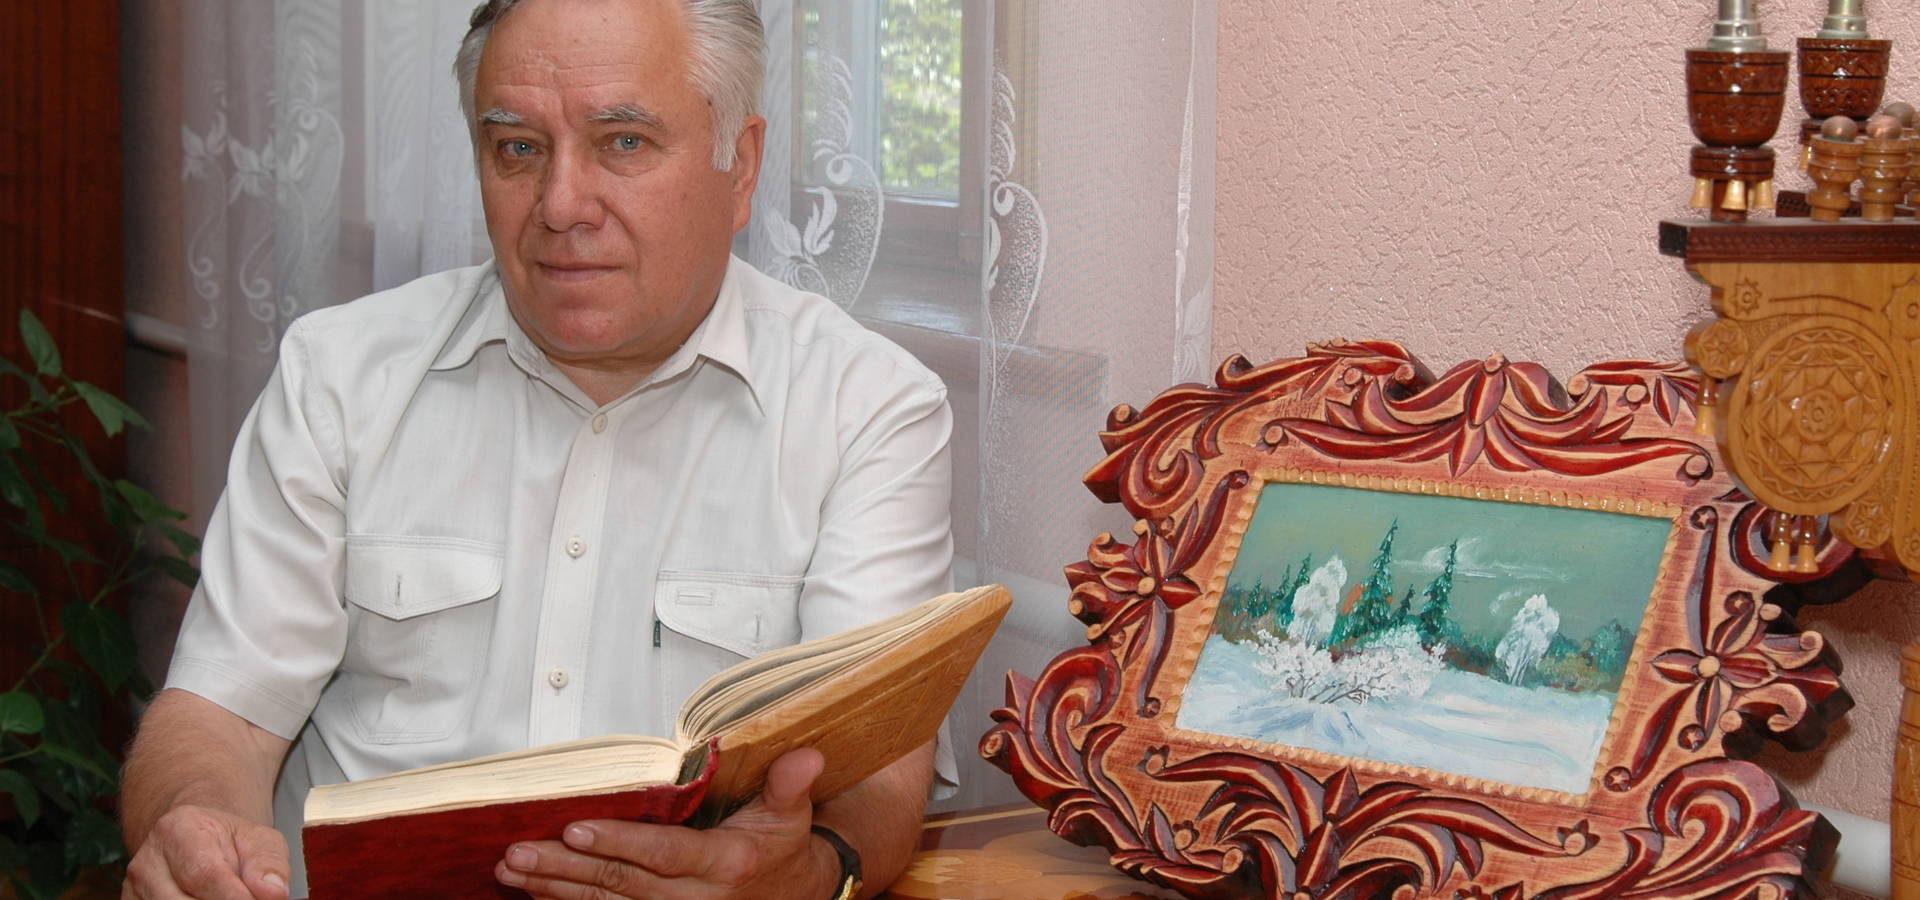 Василя Гальчевського занесено до Книги пошани та пам’яті «Гордість Хмільника»